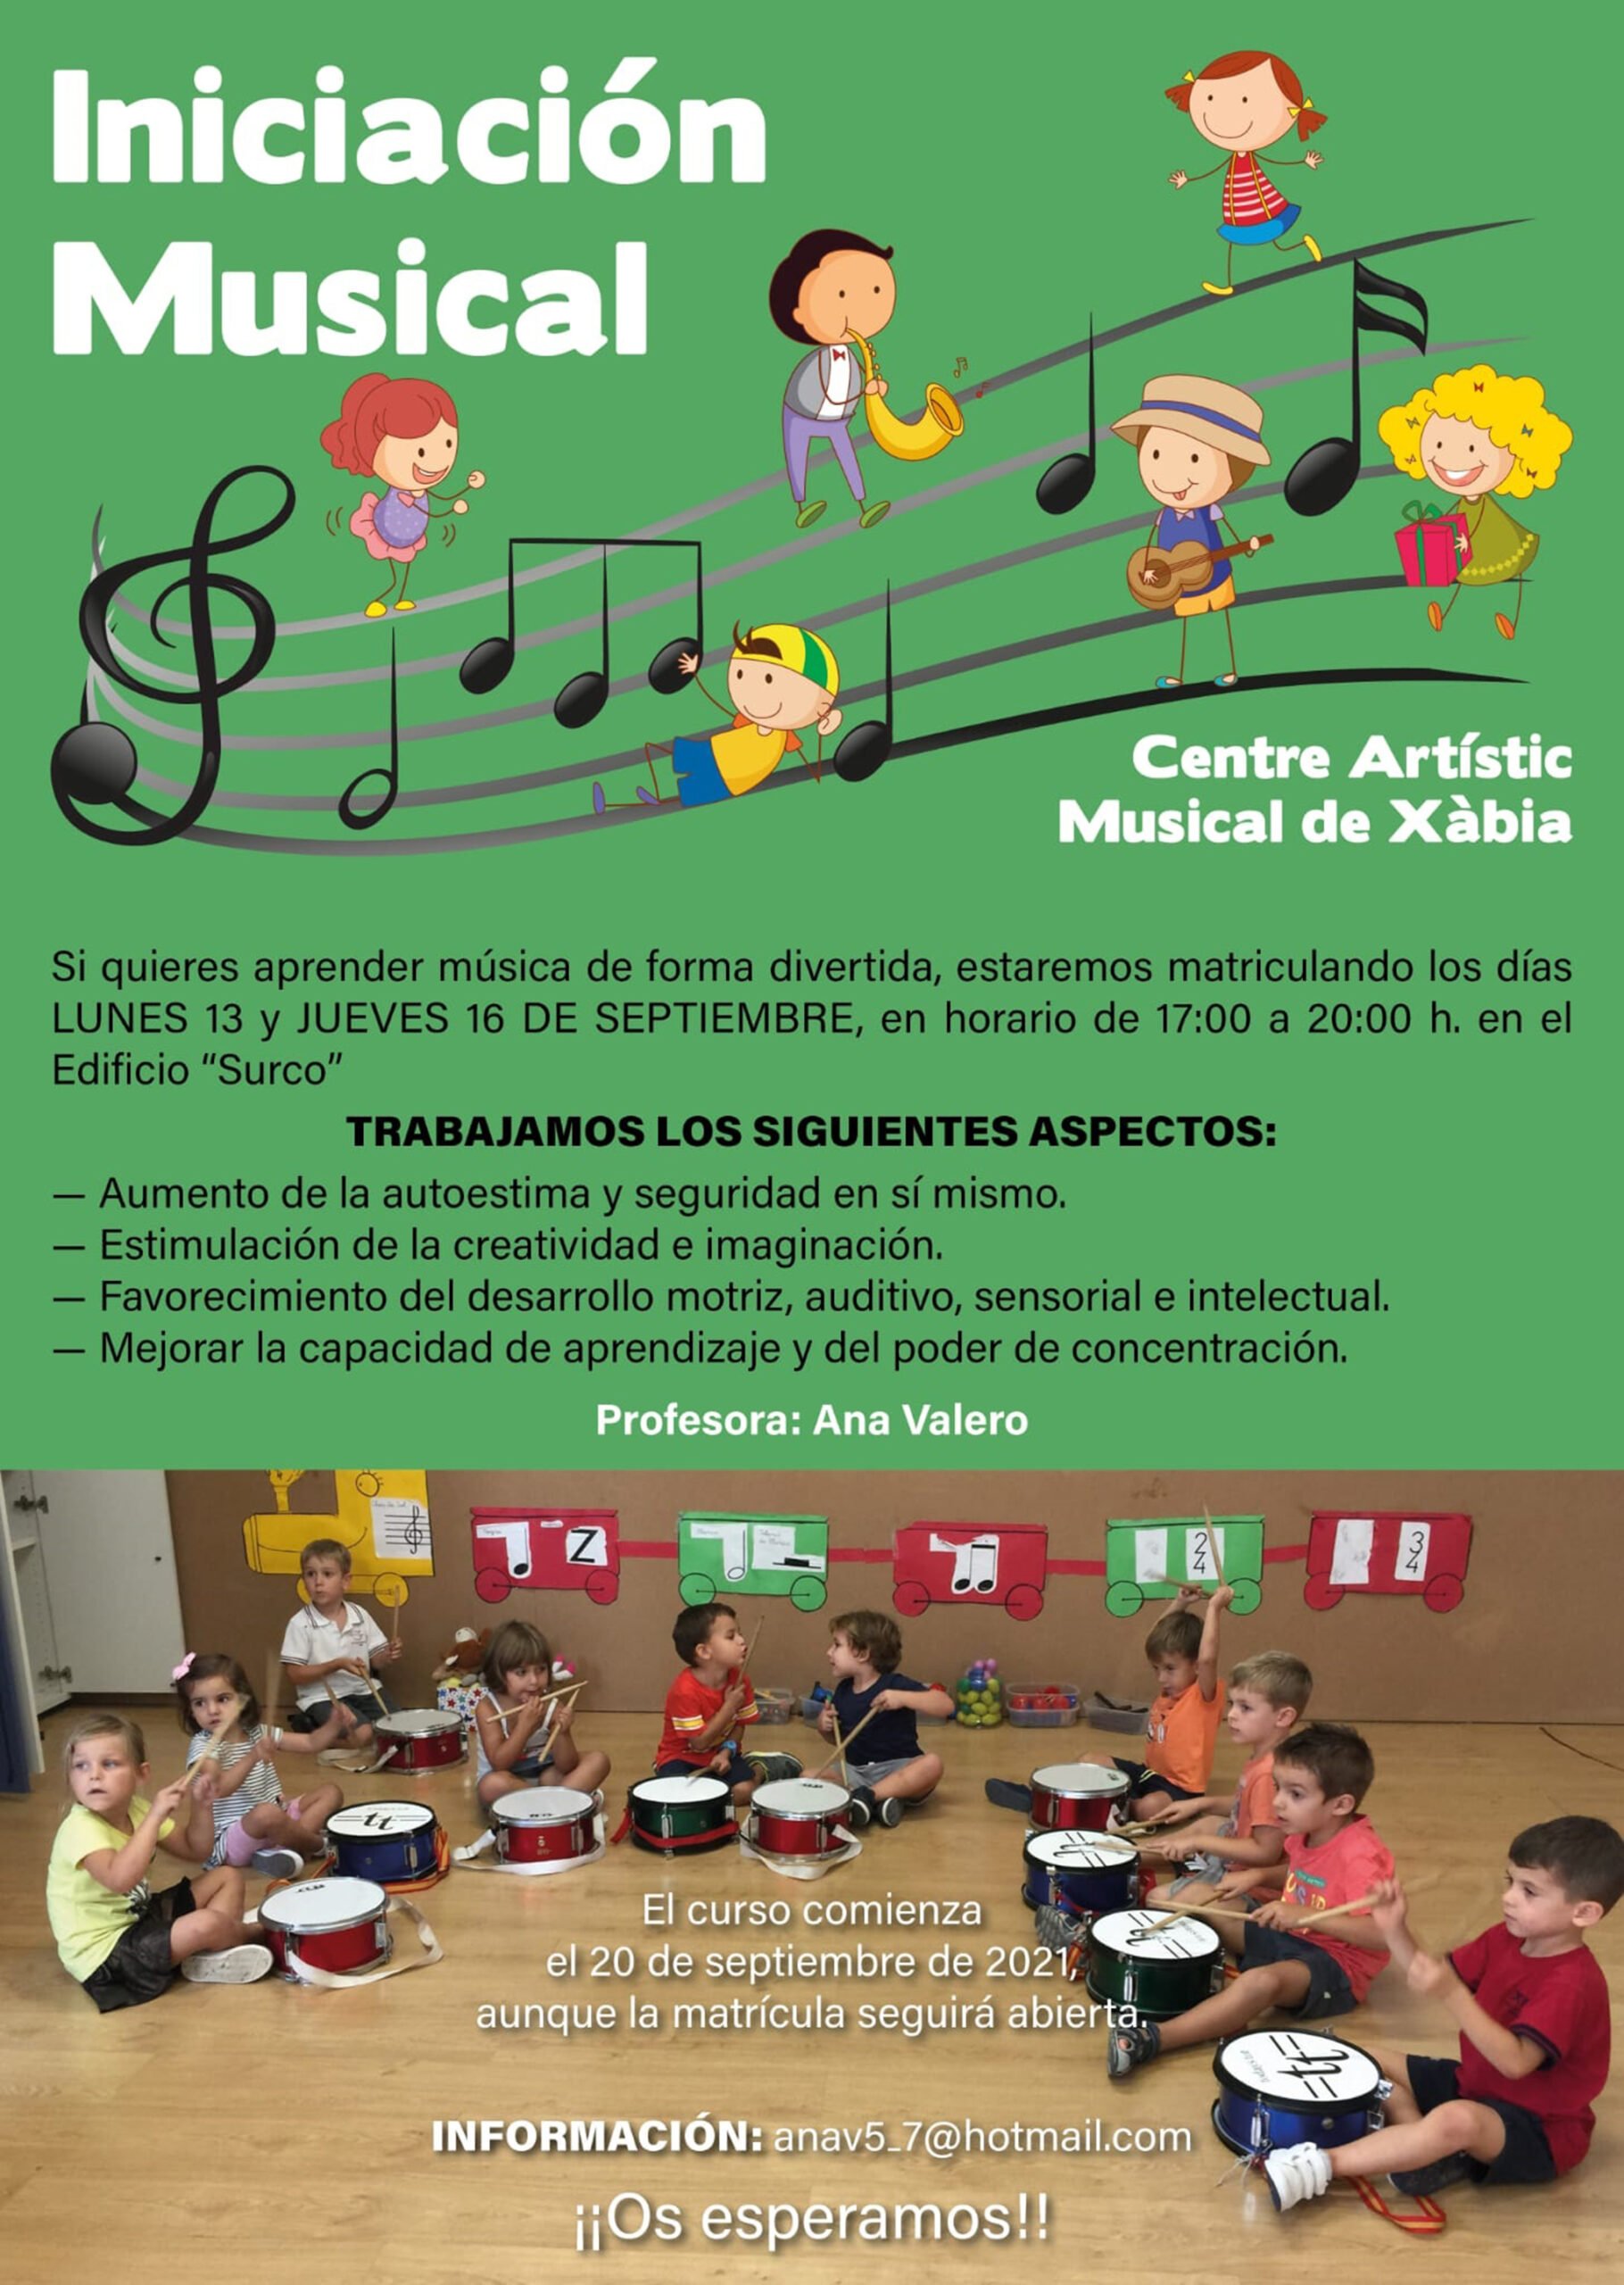 Cartel informativo nuevo curso 2021-22 Iniciación Musical en el Centra Artístic Musical de Xàbia